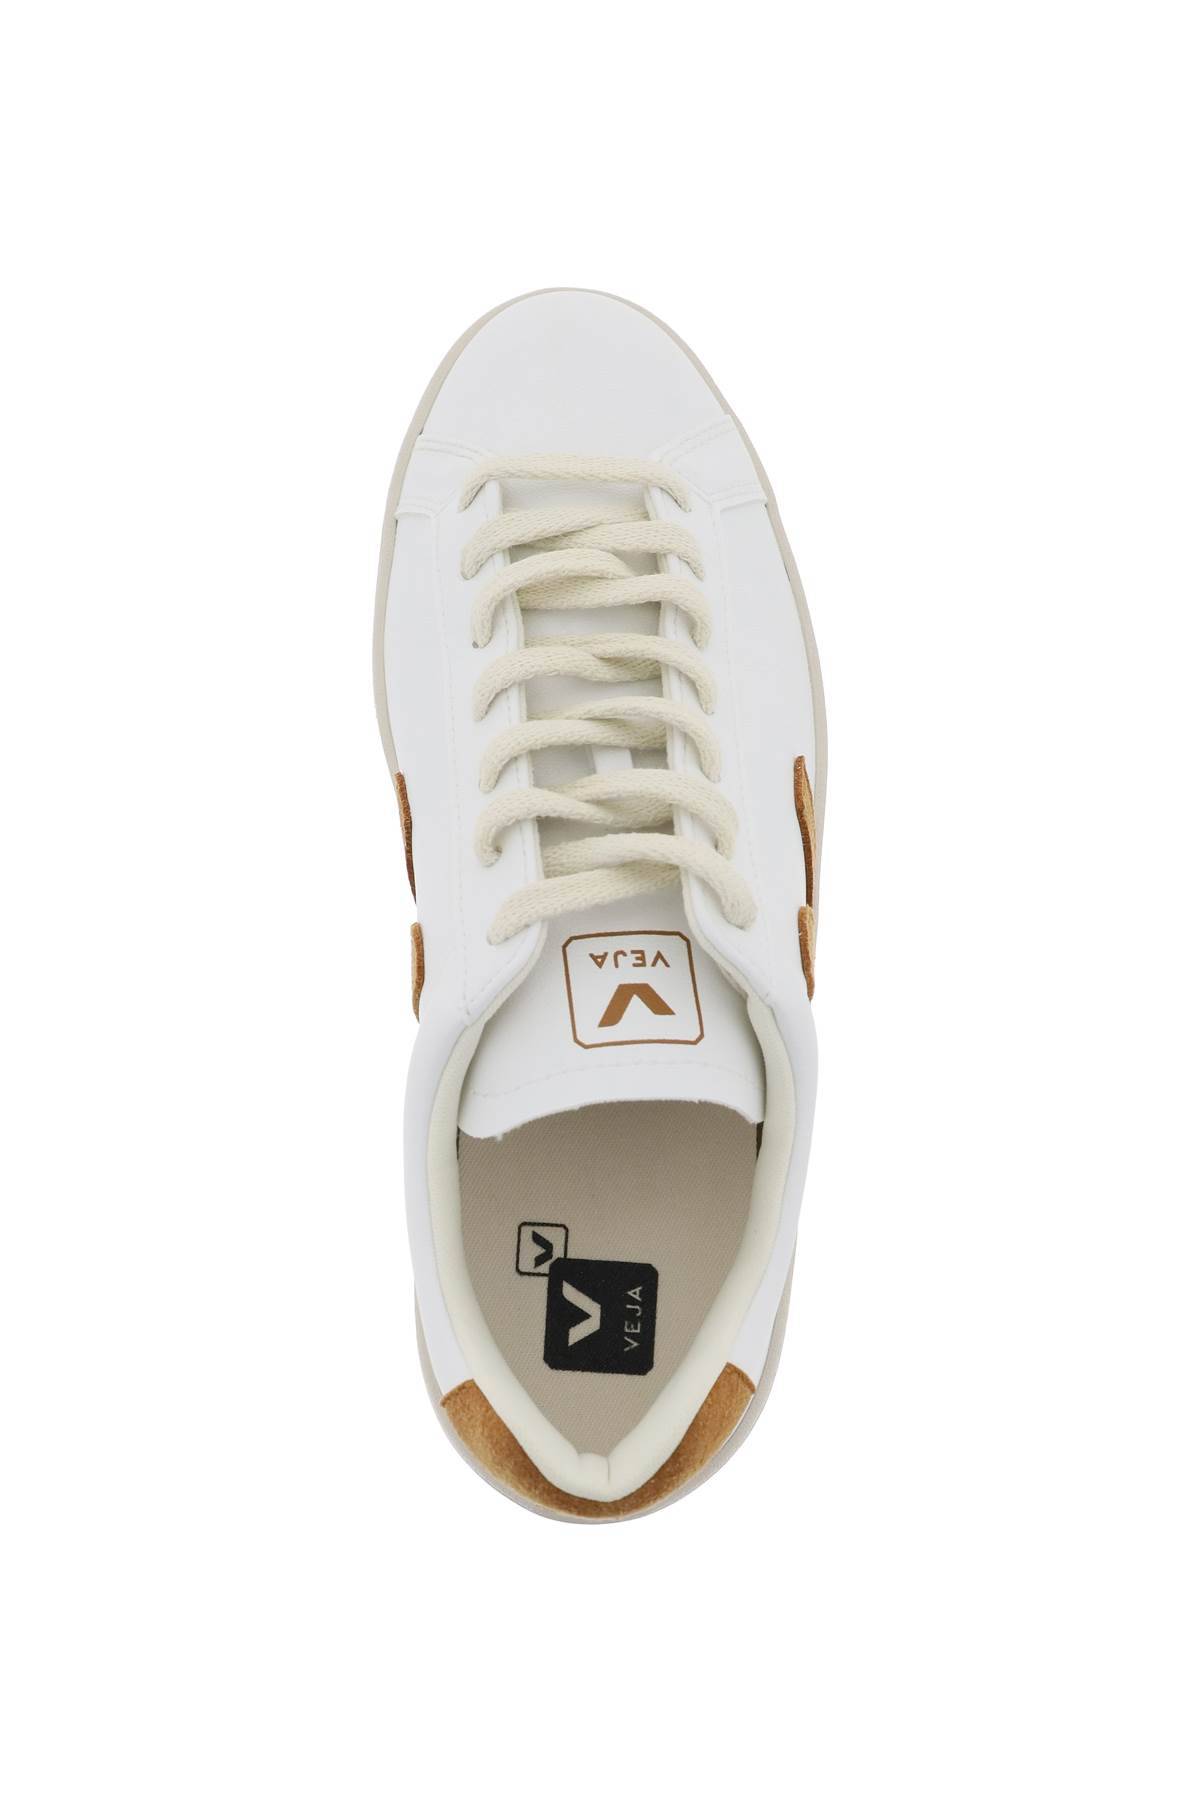 Shop Veja 'urca' Vegan Sneakers In White,brown